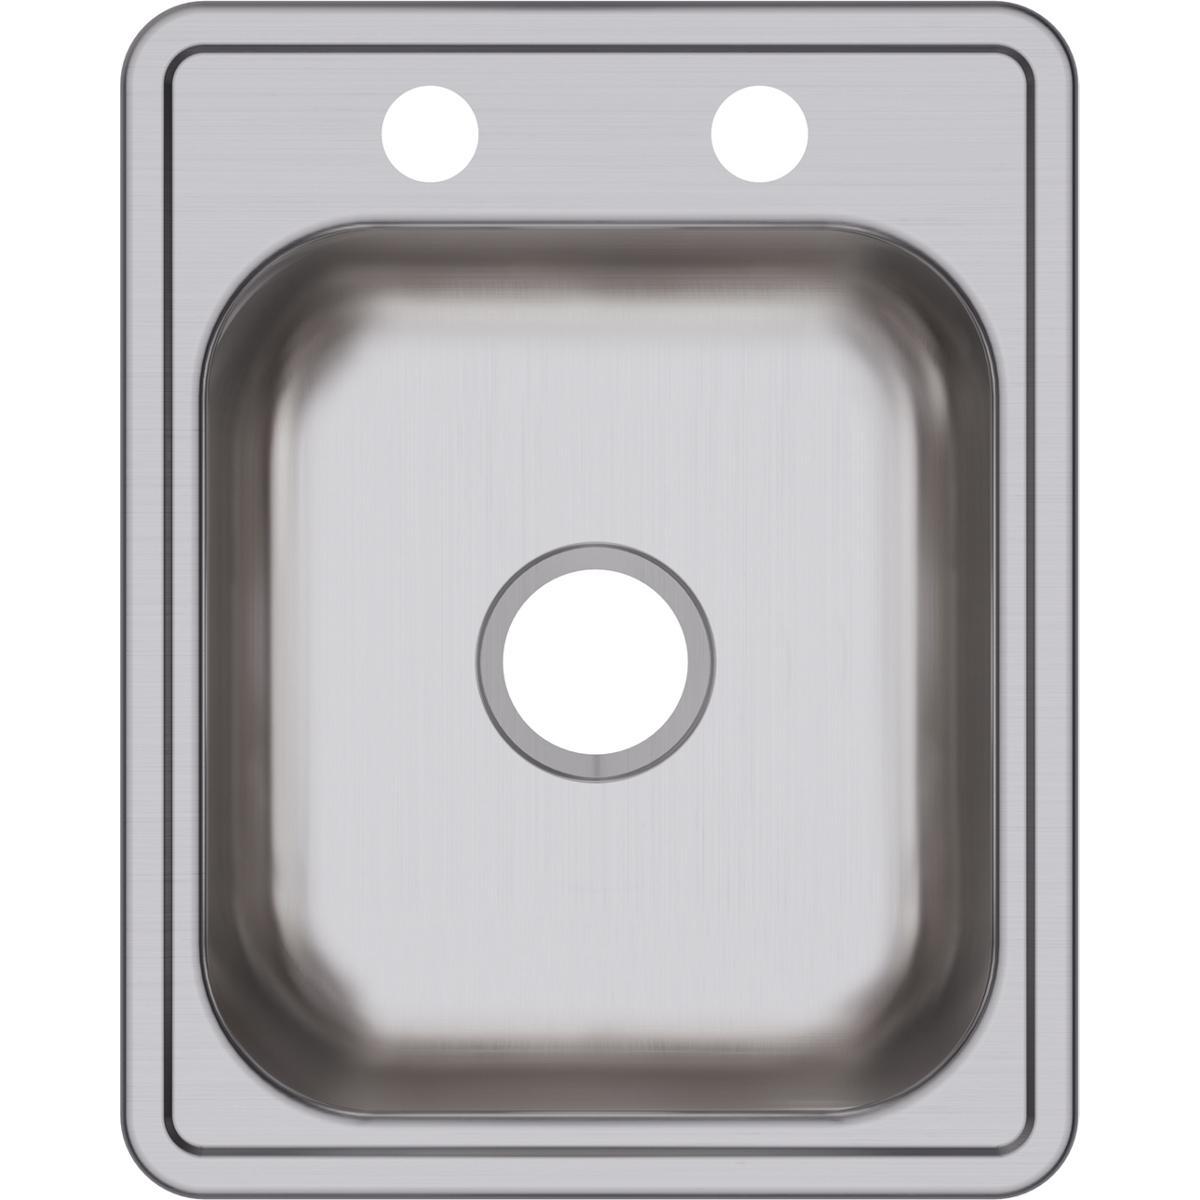 Elkay Dayton Stainless Steel 17" x 21-1/4" x 6-1/2", Single Bowl Drop-in Bar Sink-DirectSinks